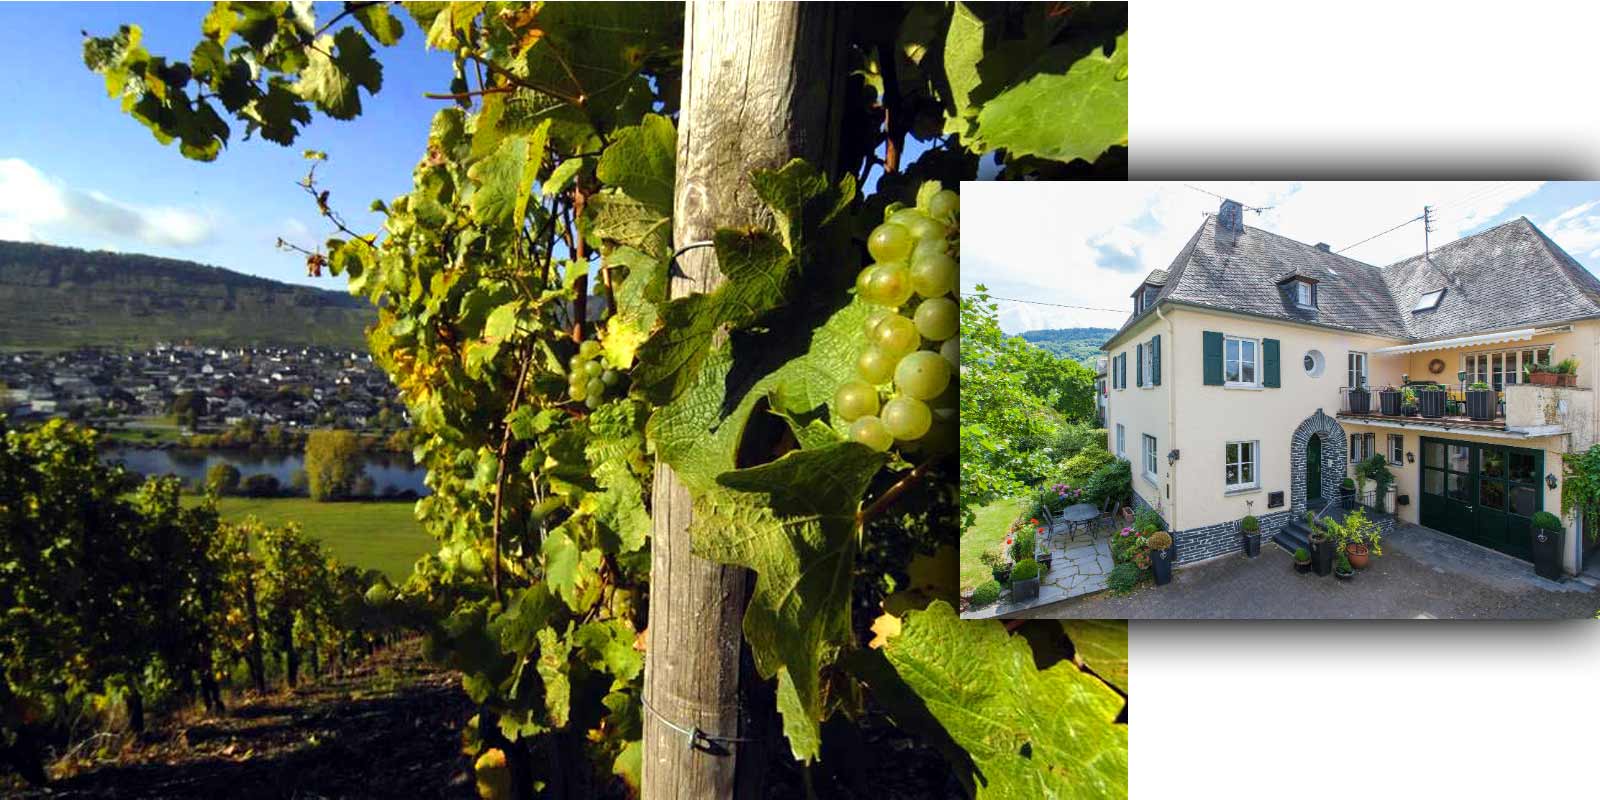 Wijnmakerij Grans-Fassian - wijngebied van de Moezel Gerhard Grans nam in 1982 het wijnbouwbedrijf over van zijn vader Matthias en breidde het wijngaardoppervlak van 4 hectare uit tot 9,5 hectare vandaag de dag, waarvan 88% beplant is met Riesling, 10% Pinot Blanc en 2% Pinot Gris. De beste locaties van het wijnhuis zijn ook geclassificeerde locaties: ze zijn geclassificeerd in de hoogste teeltcategorie.